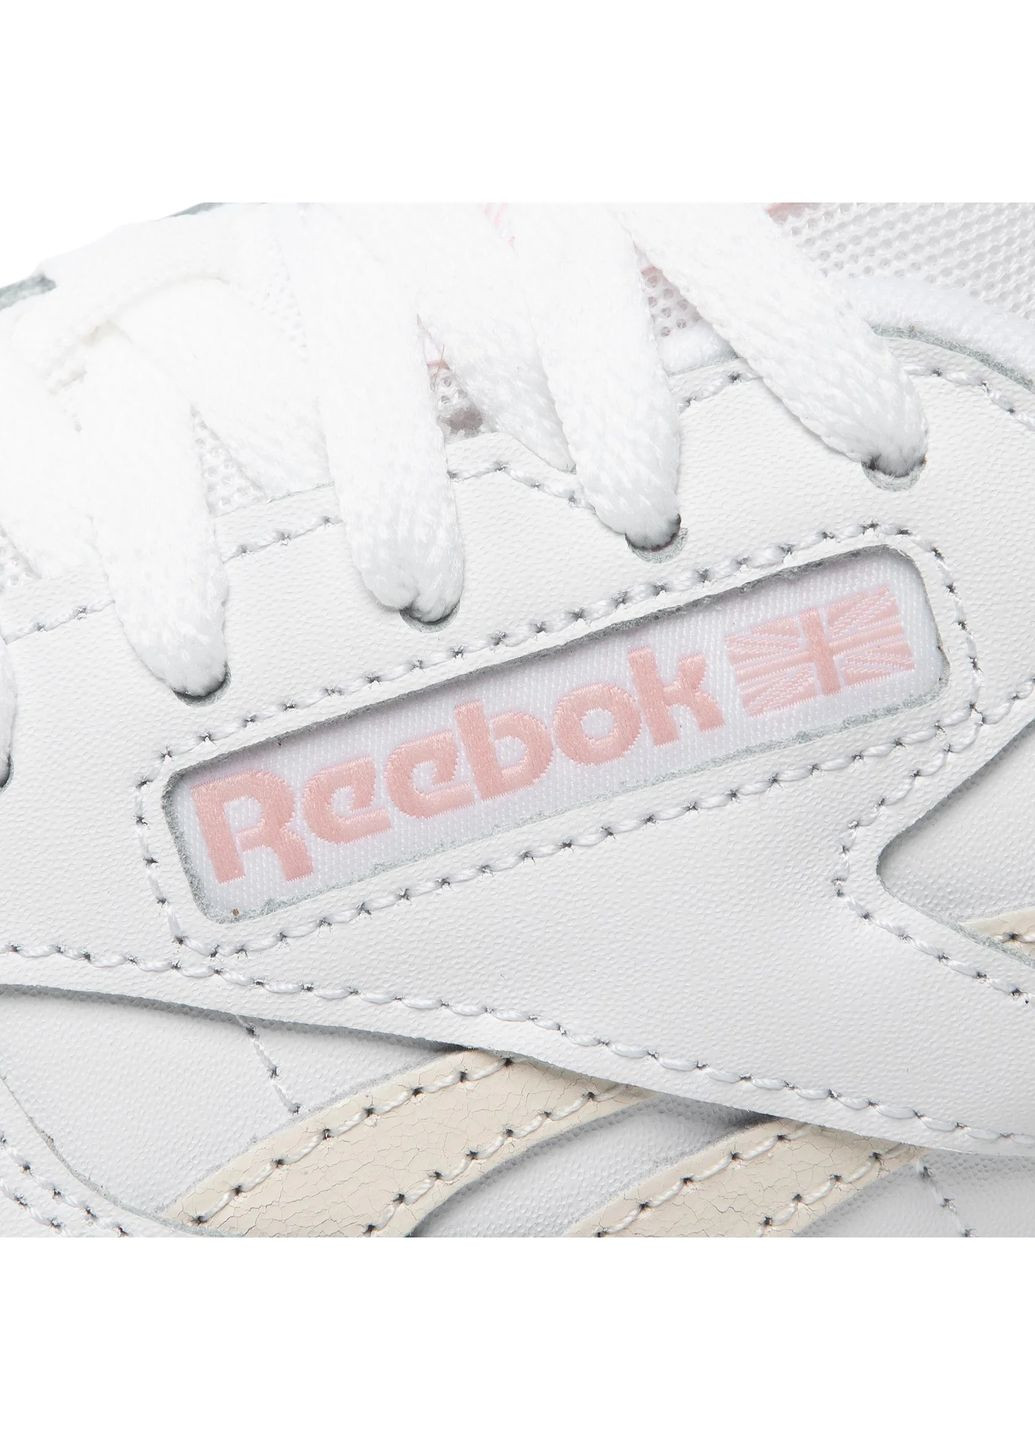 Білі осінні кросівки Reebok Classic Leather Sp GX8689